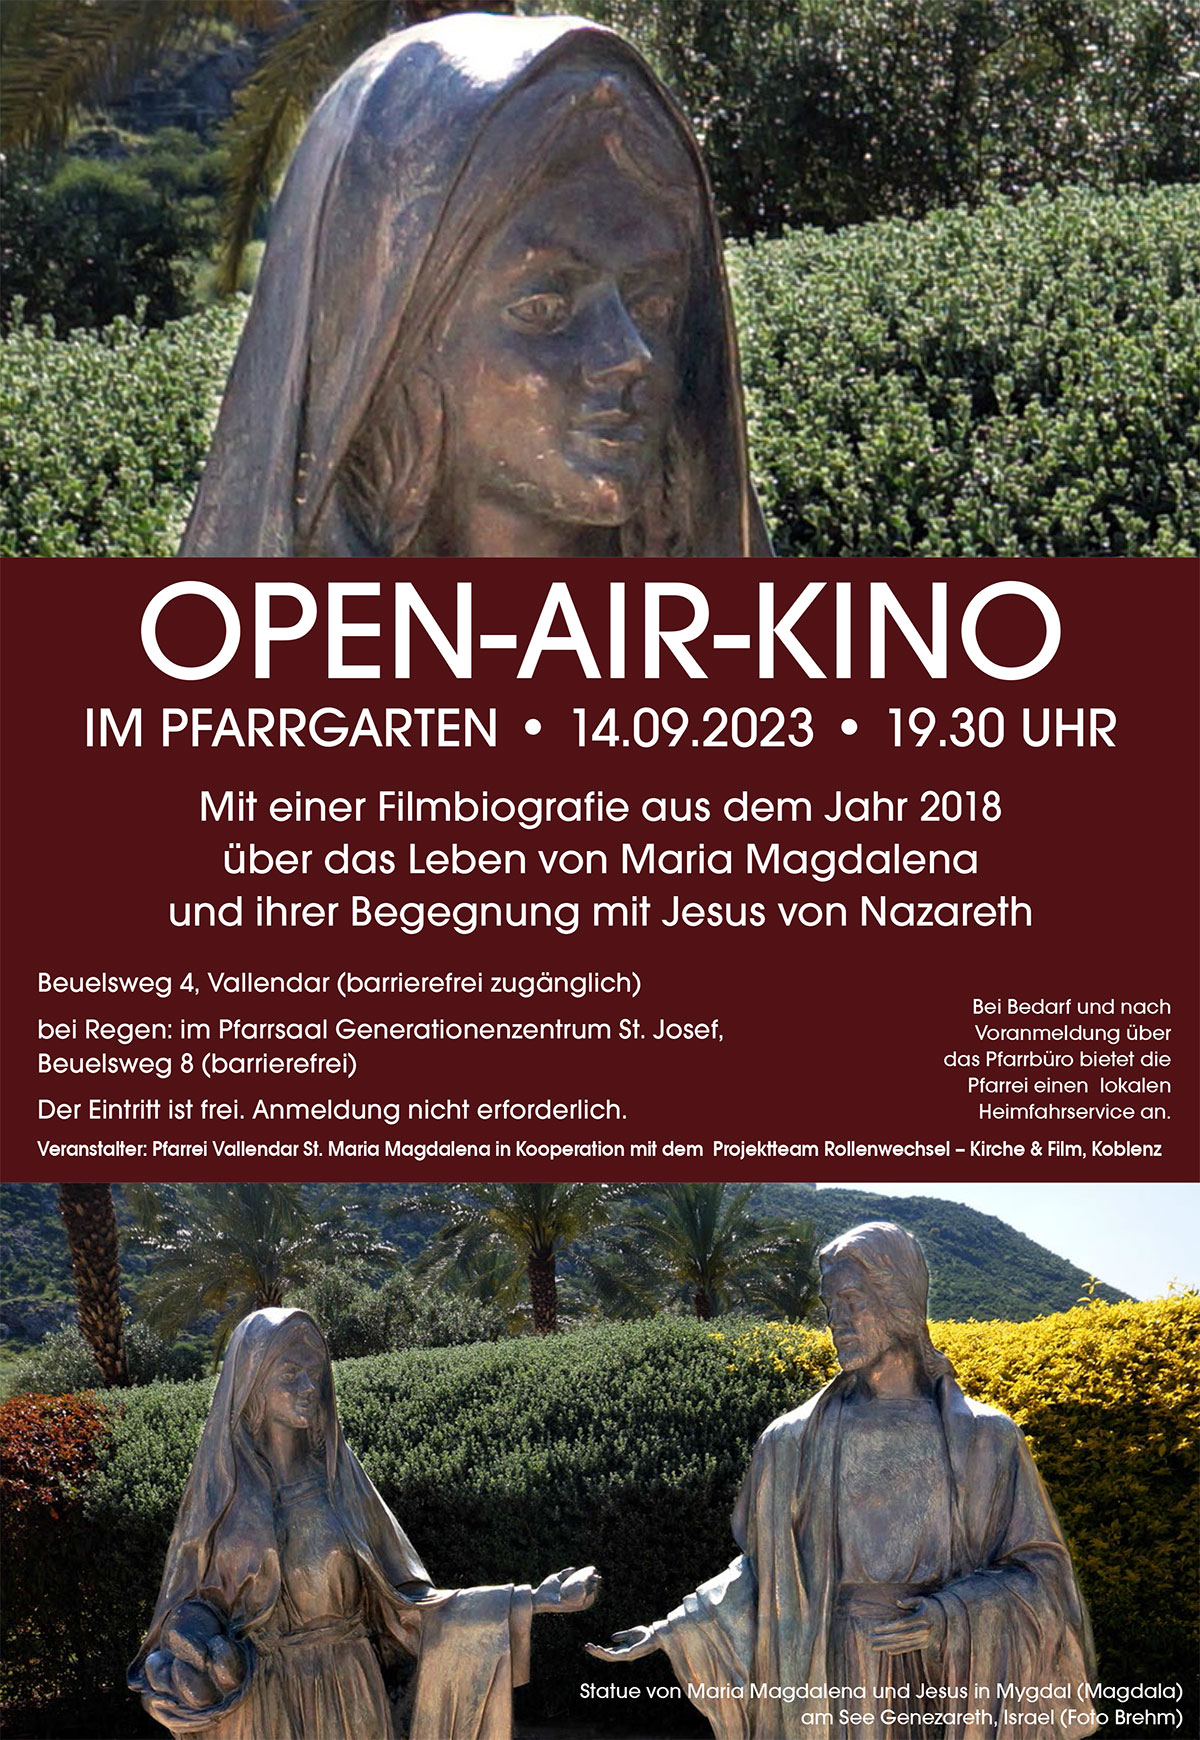 Open-Air-Kino im Pfarrgarten - Plakat (Foto: Brehm)